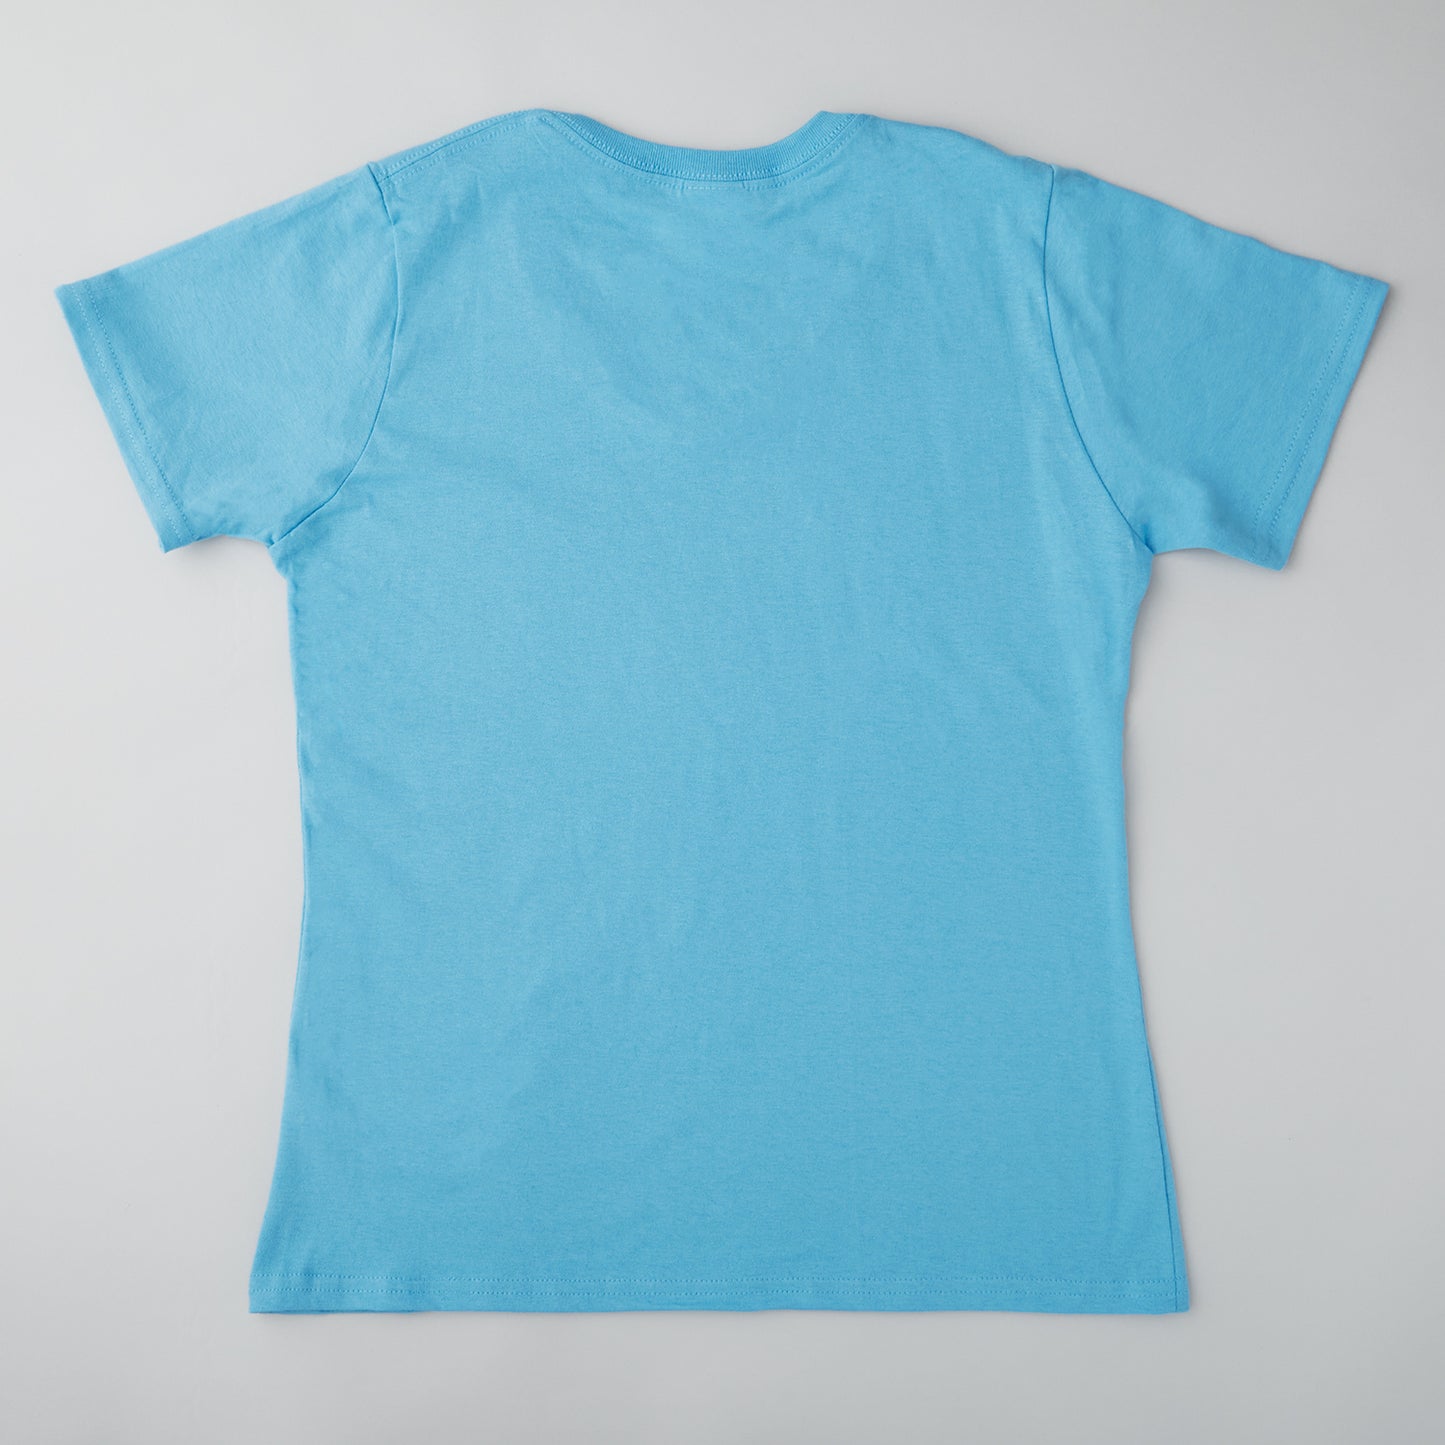 Quiltmaker T-shirt - Aquatic Blue 2XL Alternative View #1